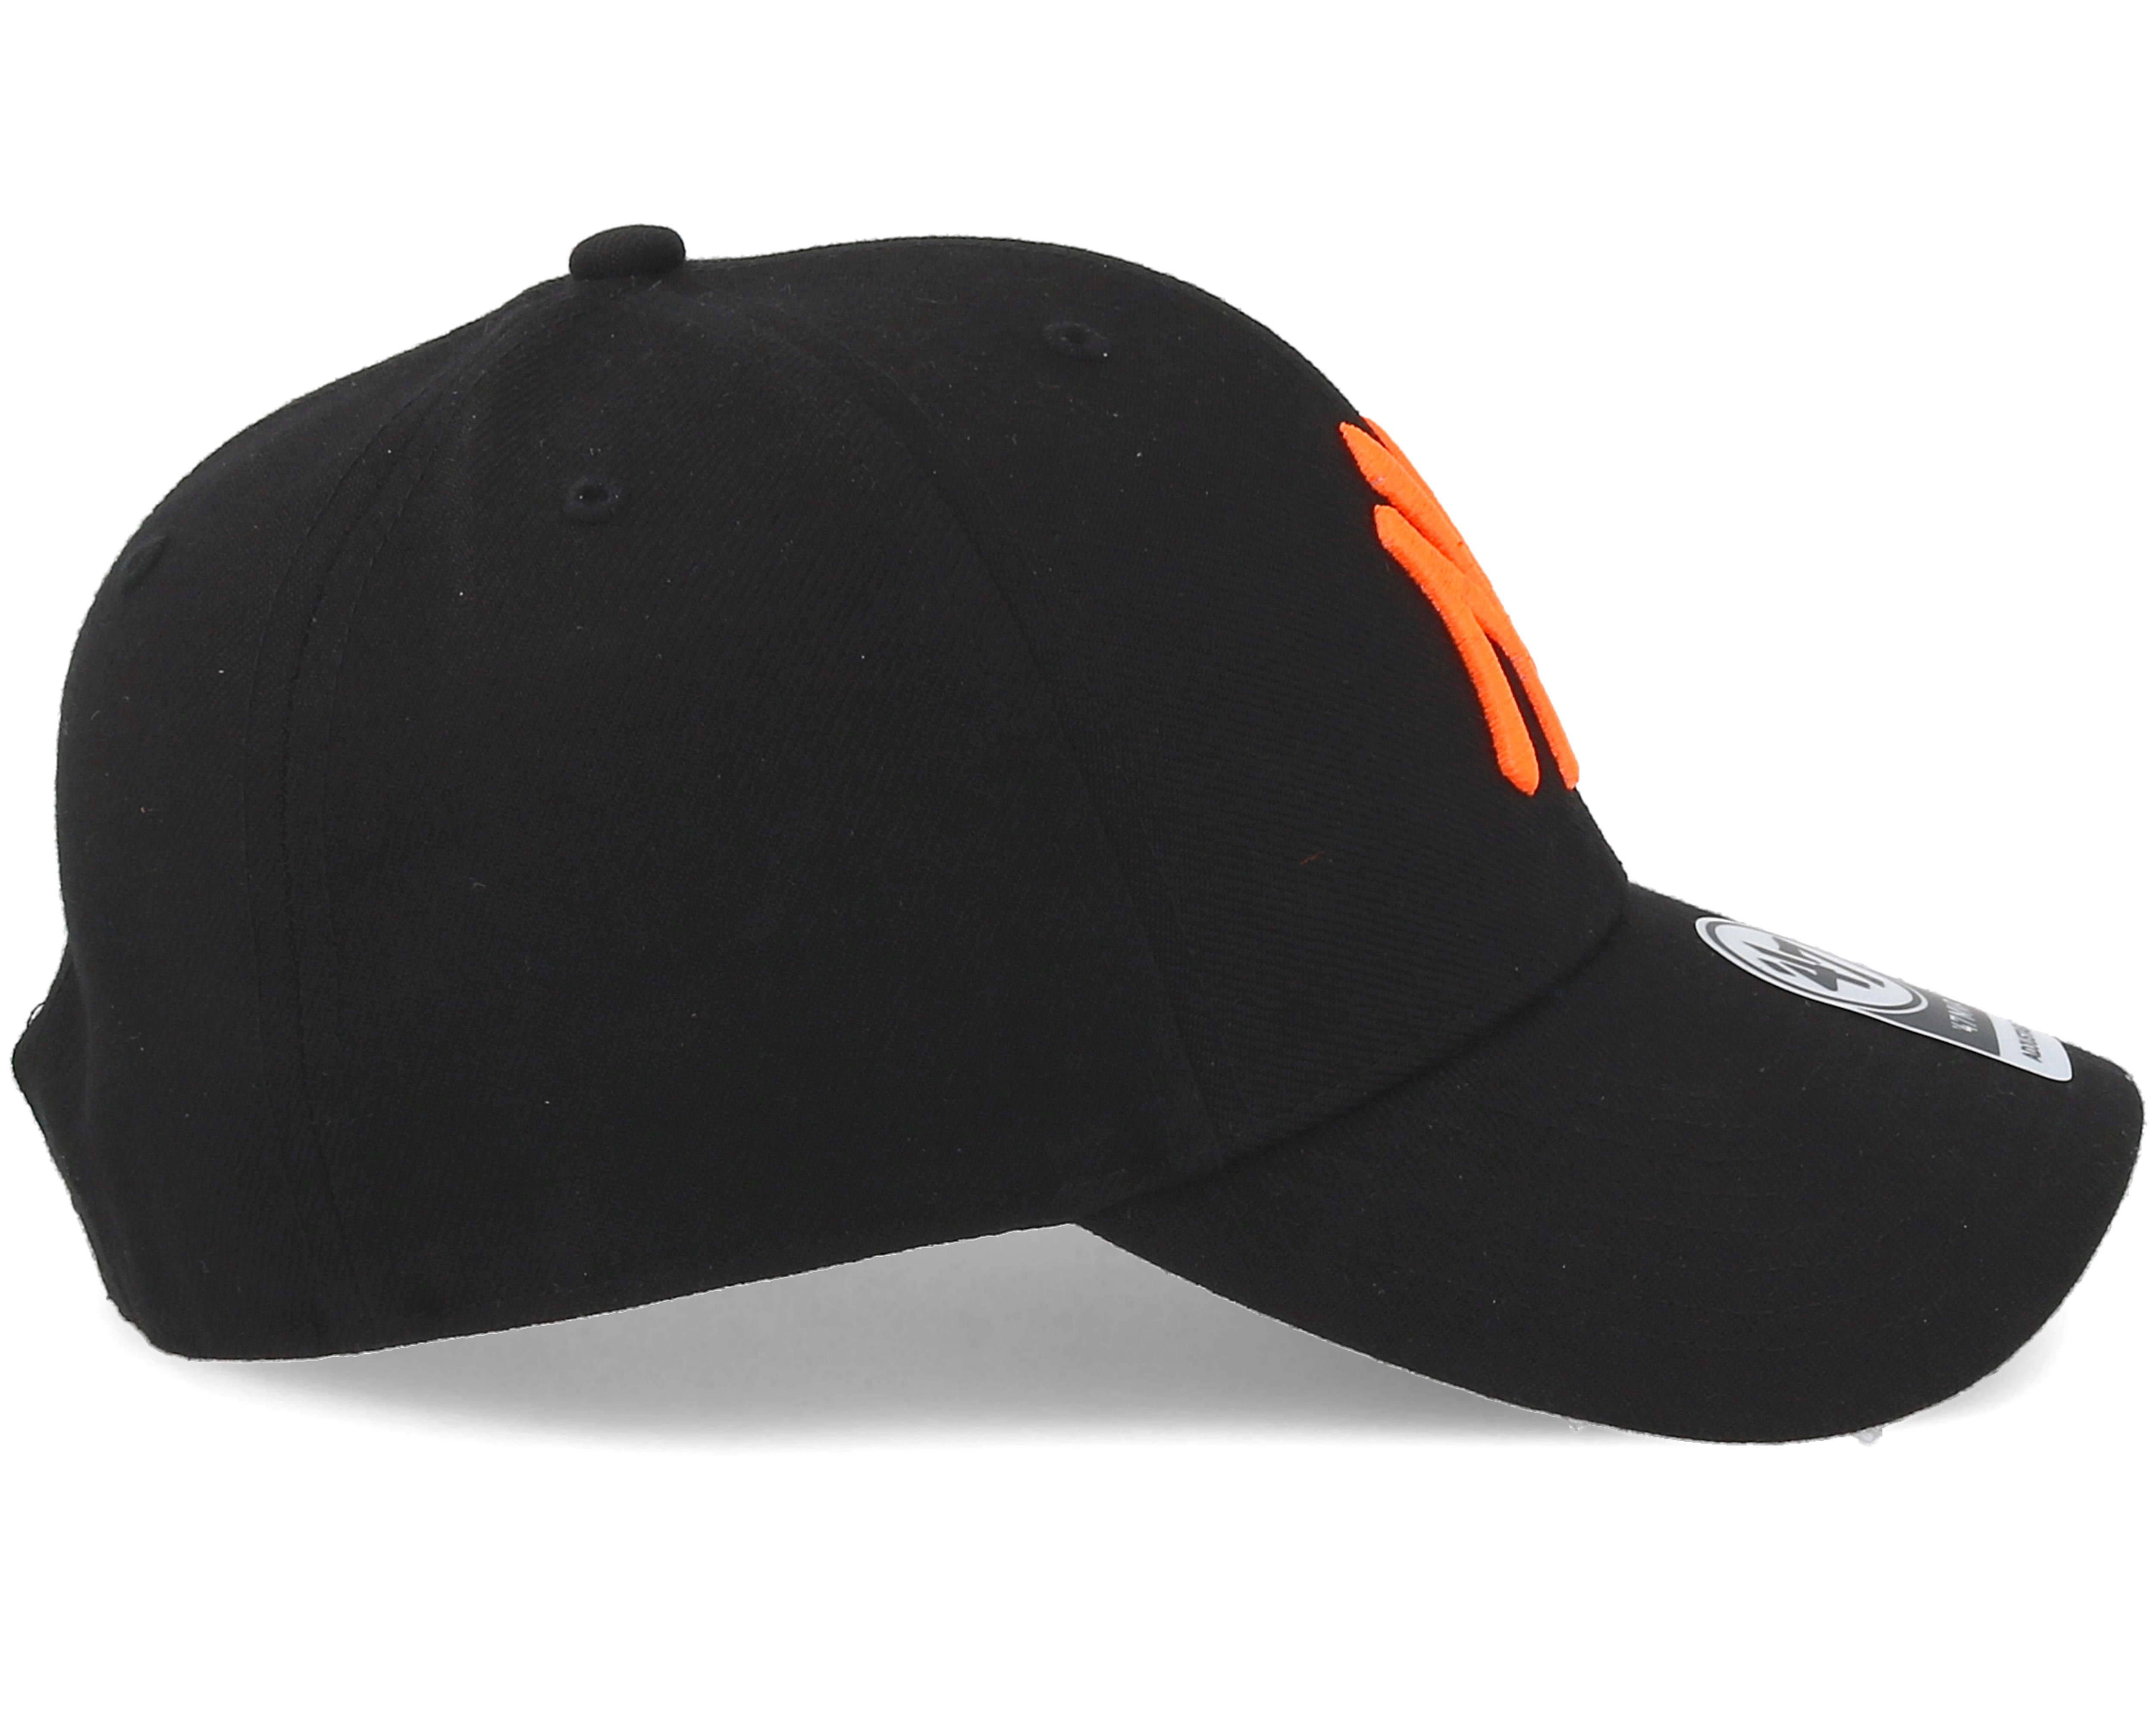 New York Yankees Mvp Wool Black/Orange Adjustable - 47 Brand caps ...